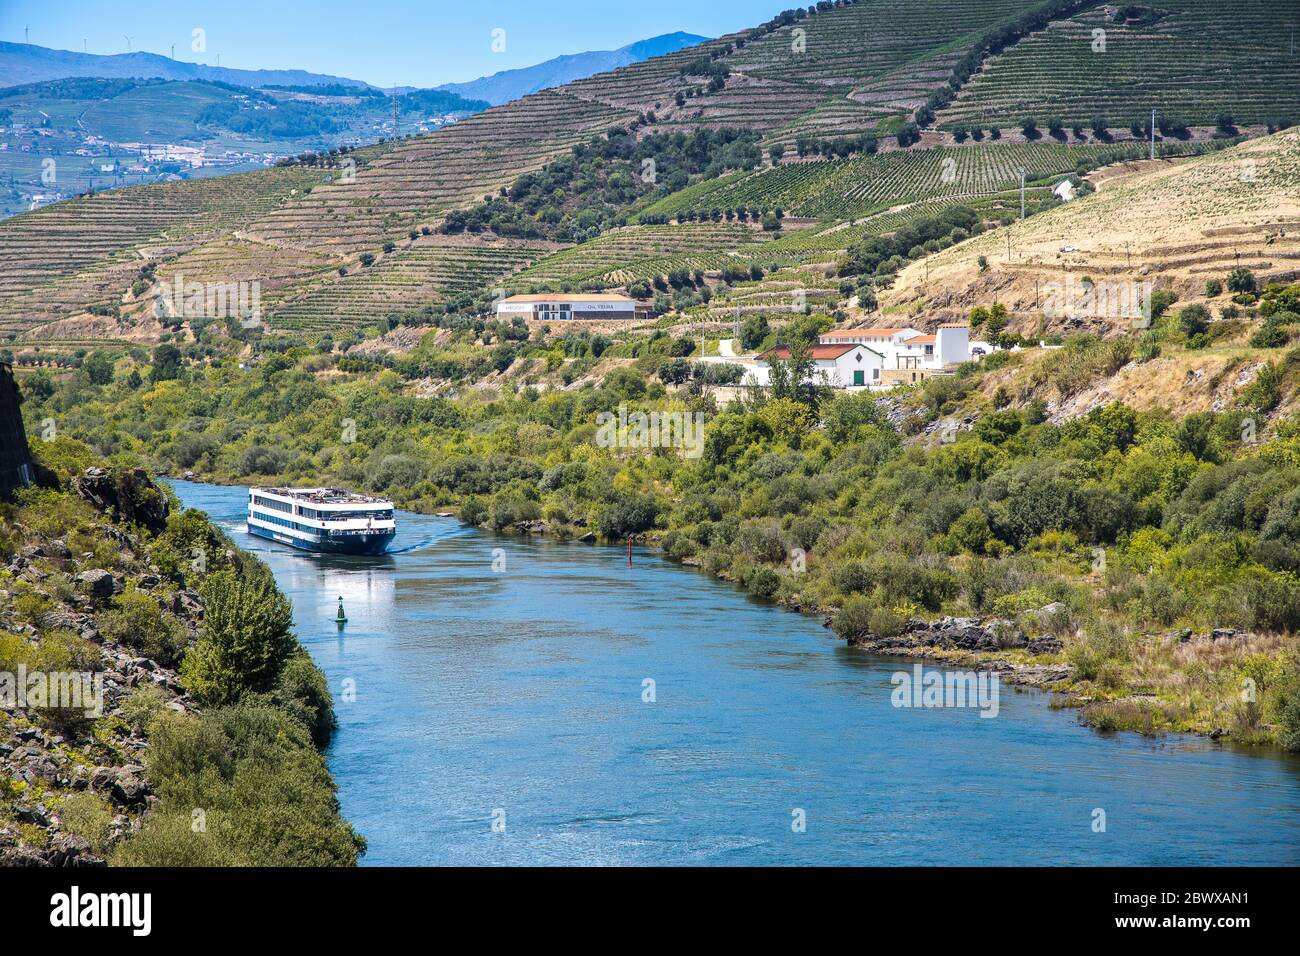 Bateau de croisière dans la vallée entouré de vignobles en terrasse le long du fleuve Douro Portugal Banque D'Images